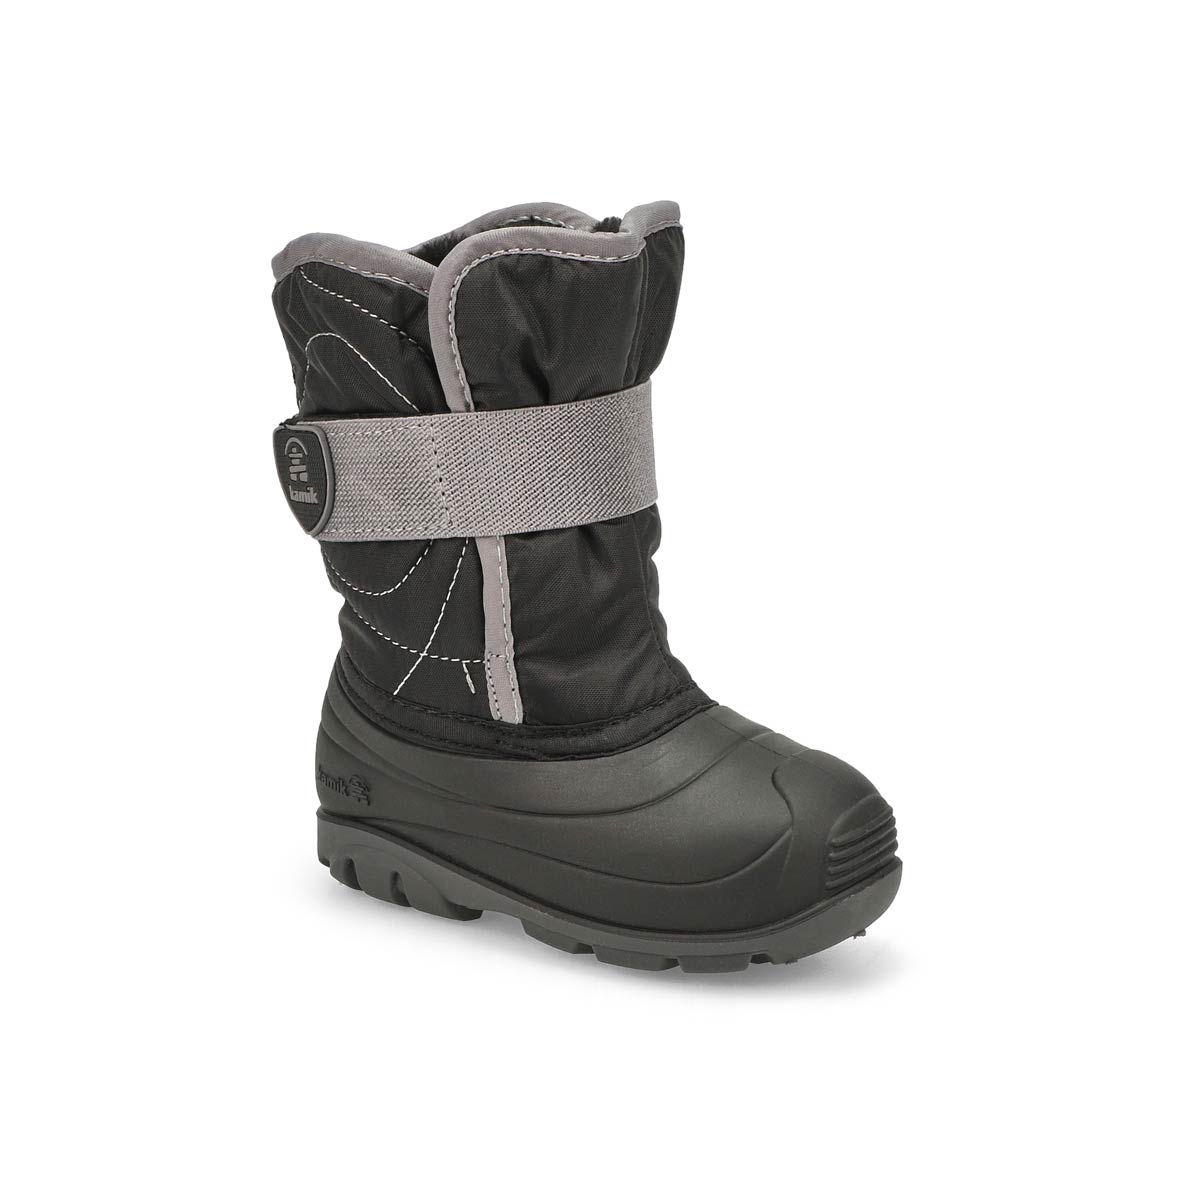 Infants' Snowbug 3 Waterproof Winter boot - Black